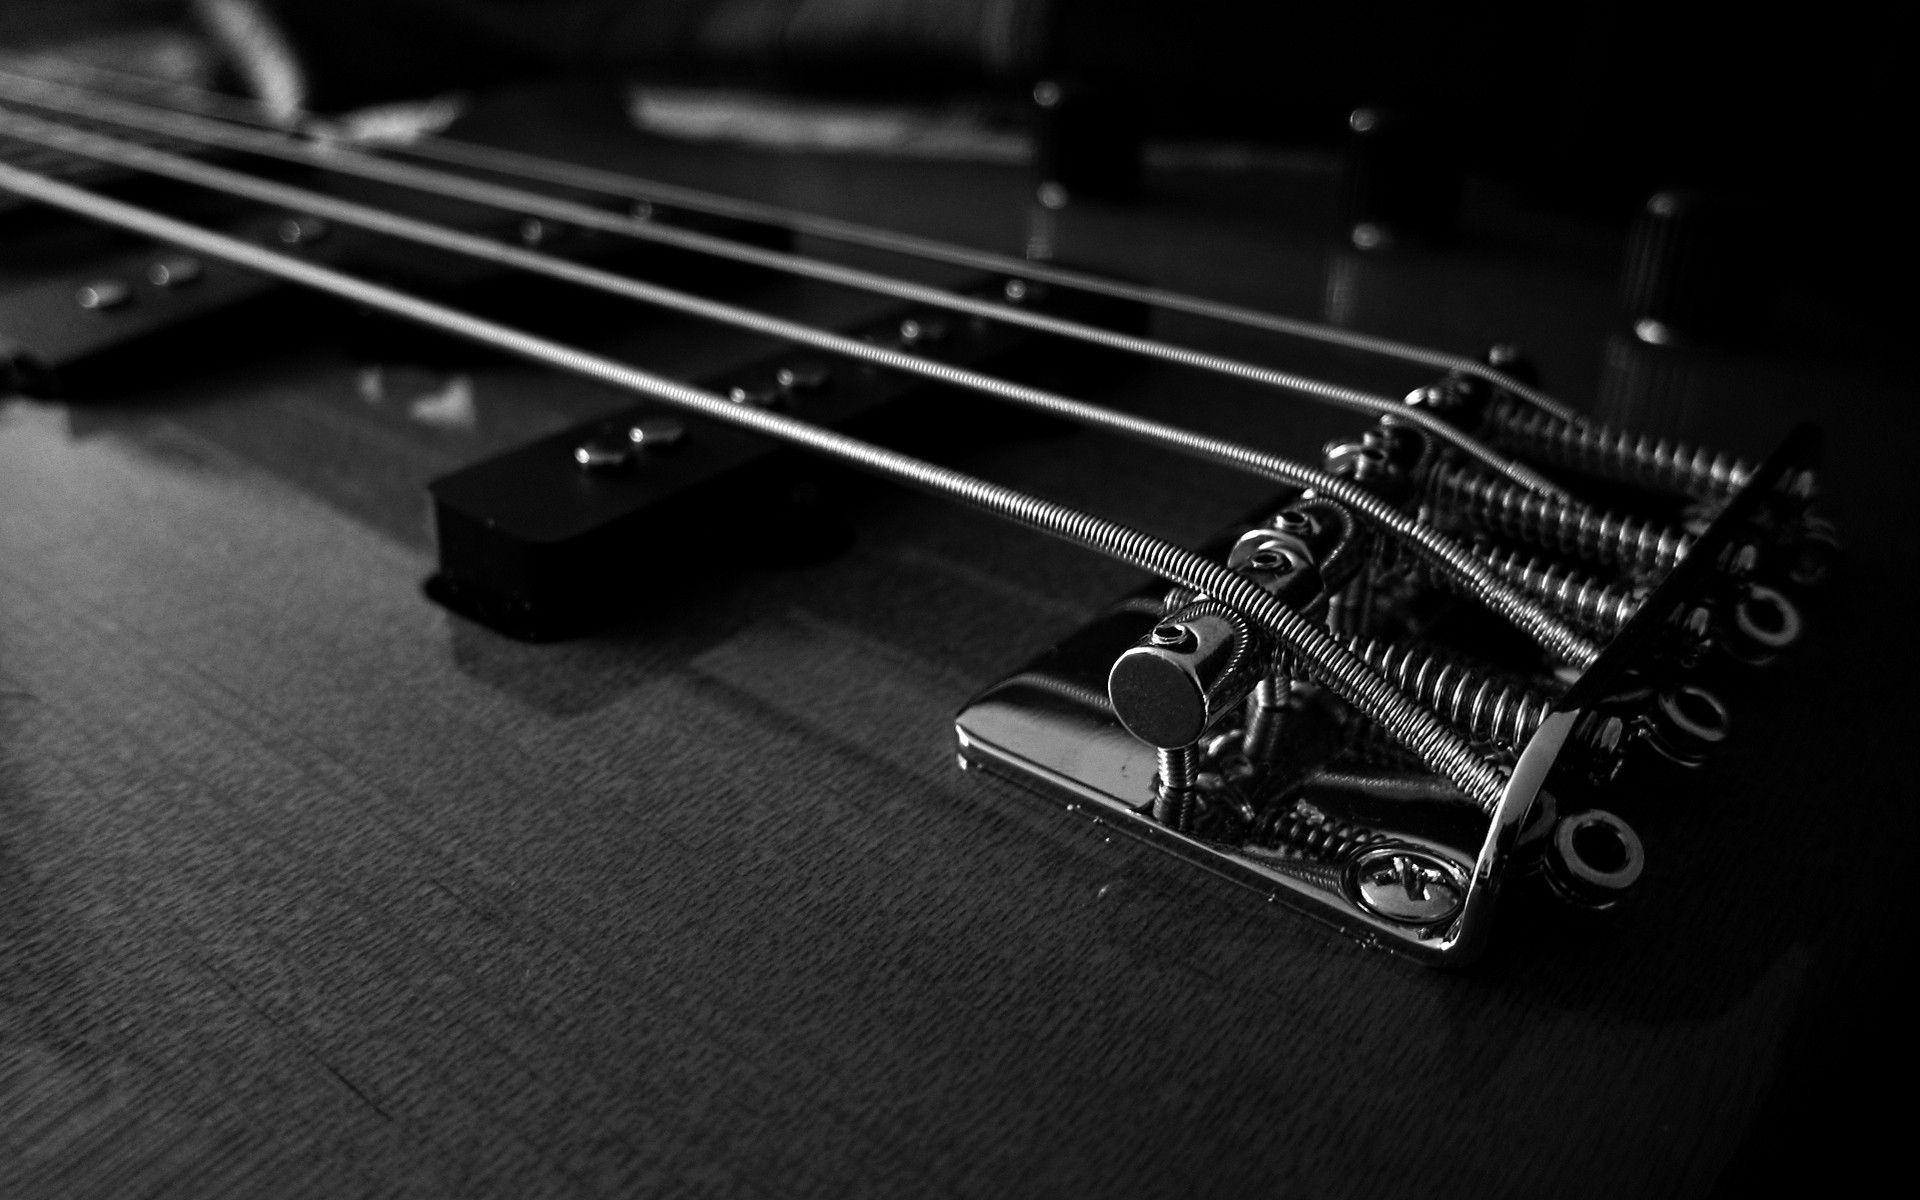 BassHeaven. Bass Porn GuitarsAmplificationBass Gear